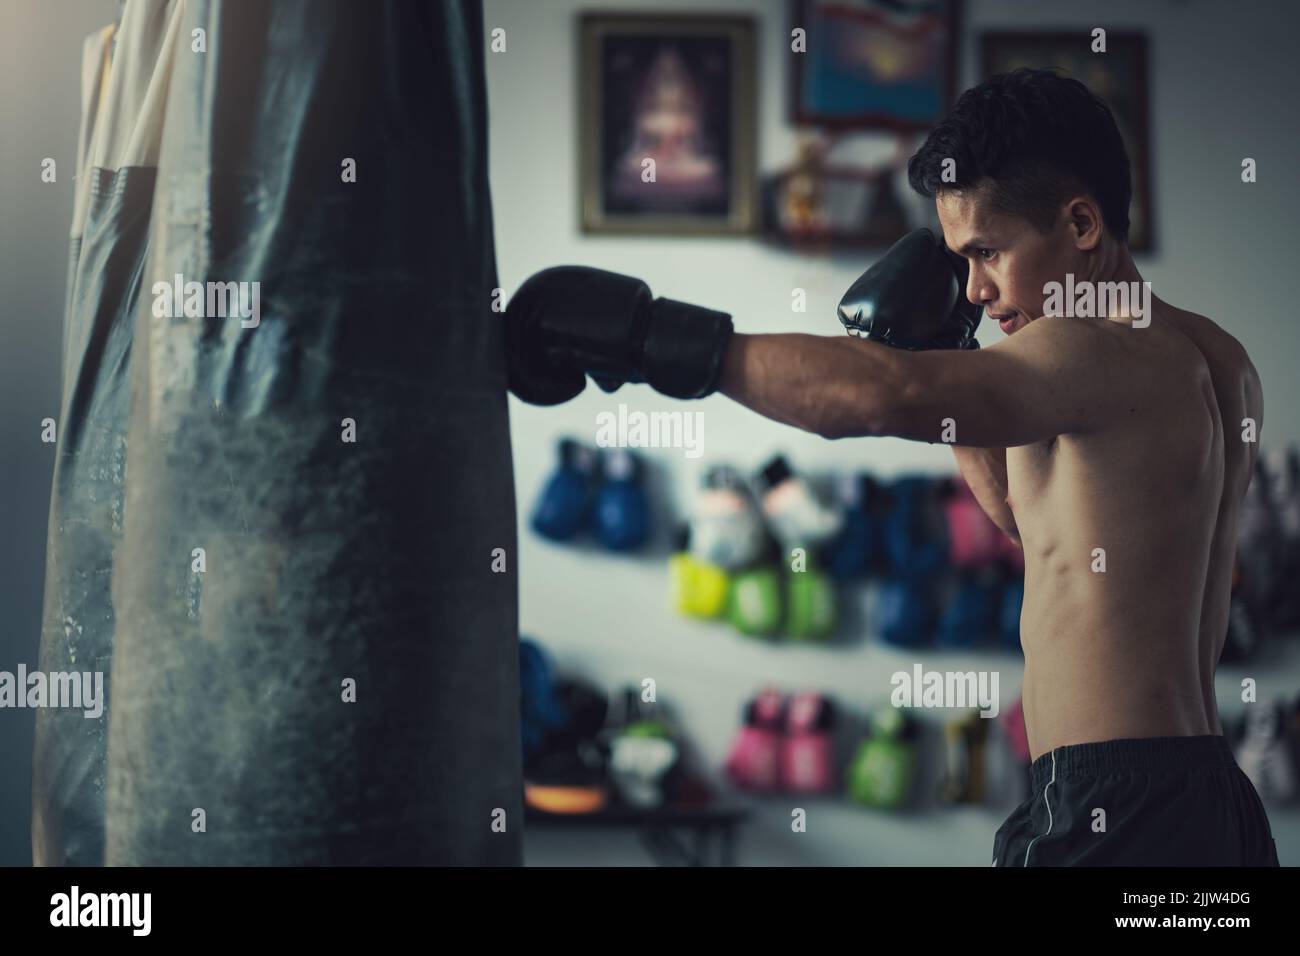 Ein männlicher Boxer trifft im Fitnessstudio mit Boxhandschuhen auf einen  Boxsack Stockfotografie - Alamy